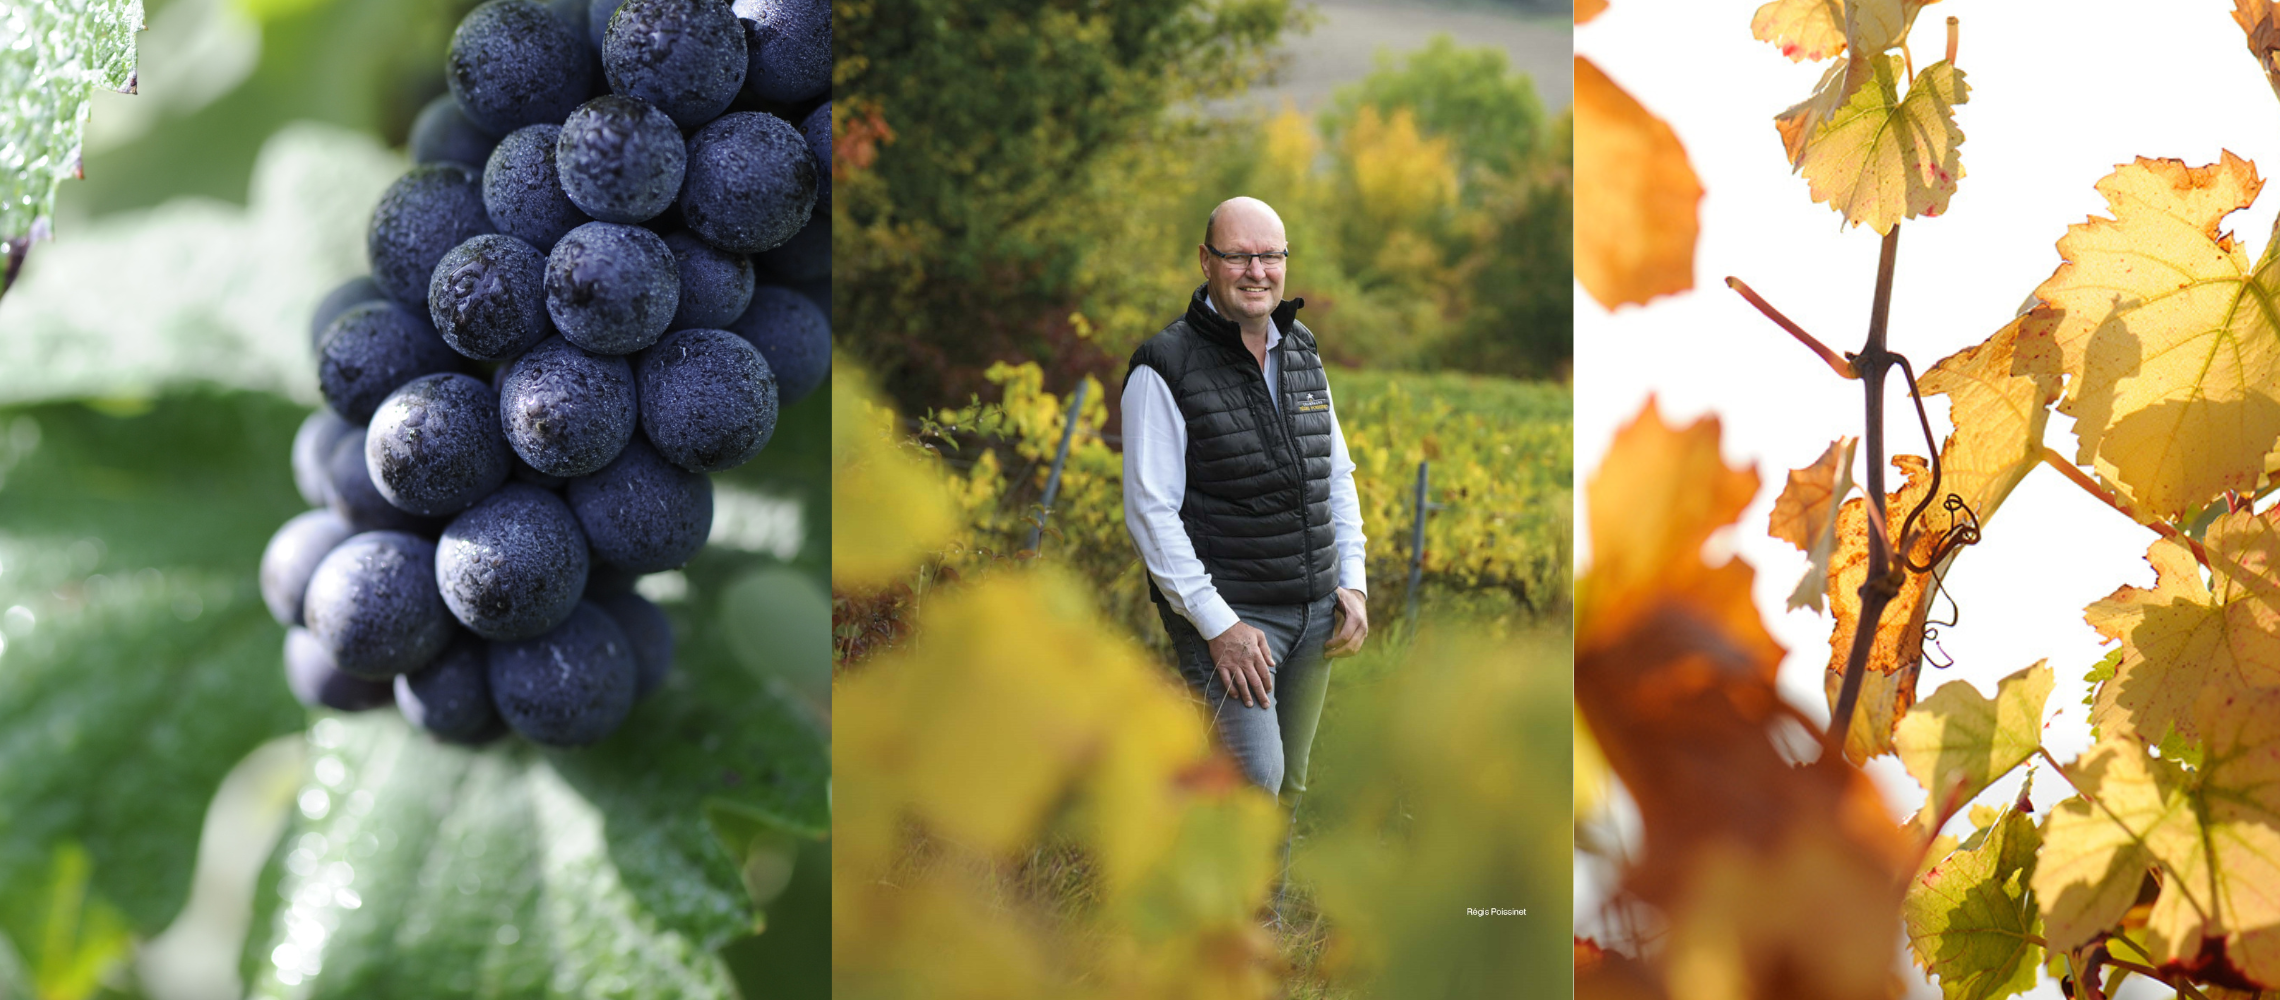 bannière de 3 images : grappe de raisin dans les vignes du cépage meunier, M. POISSINET dans les vignes et feuilles de vignes au couleur de l'automne